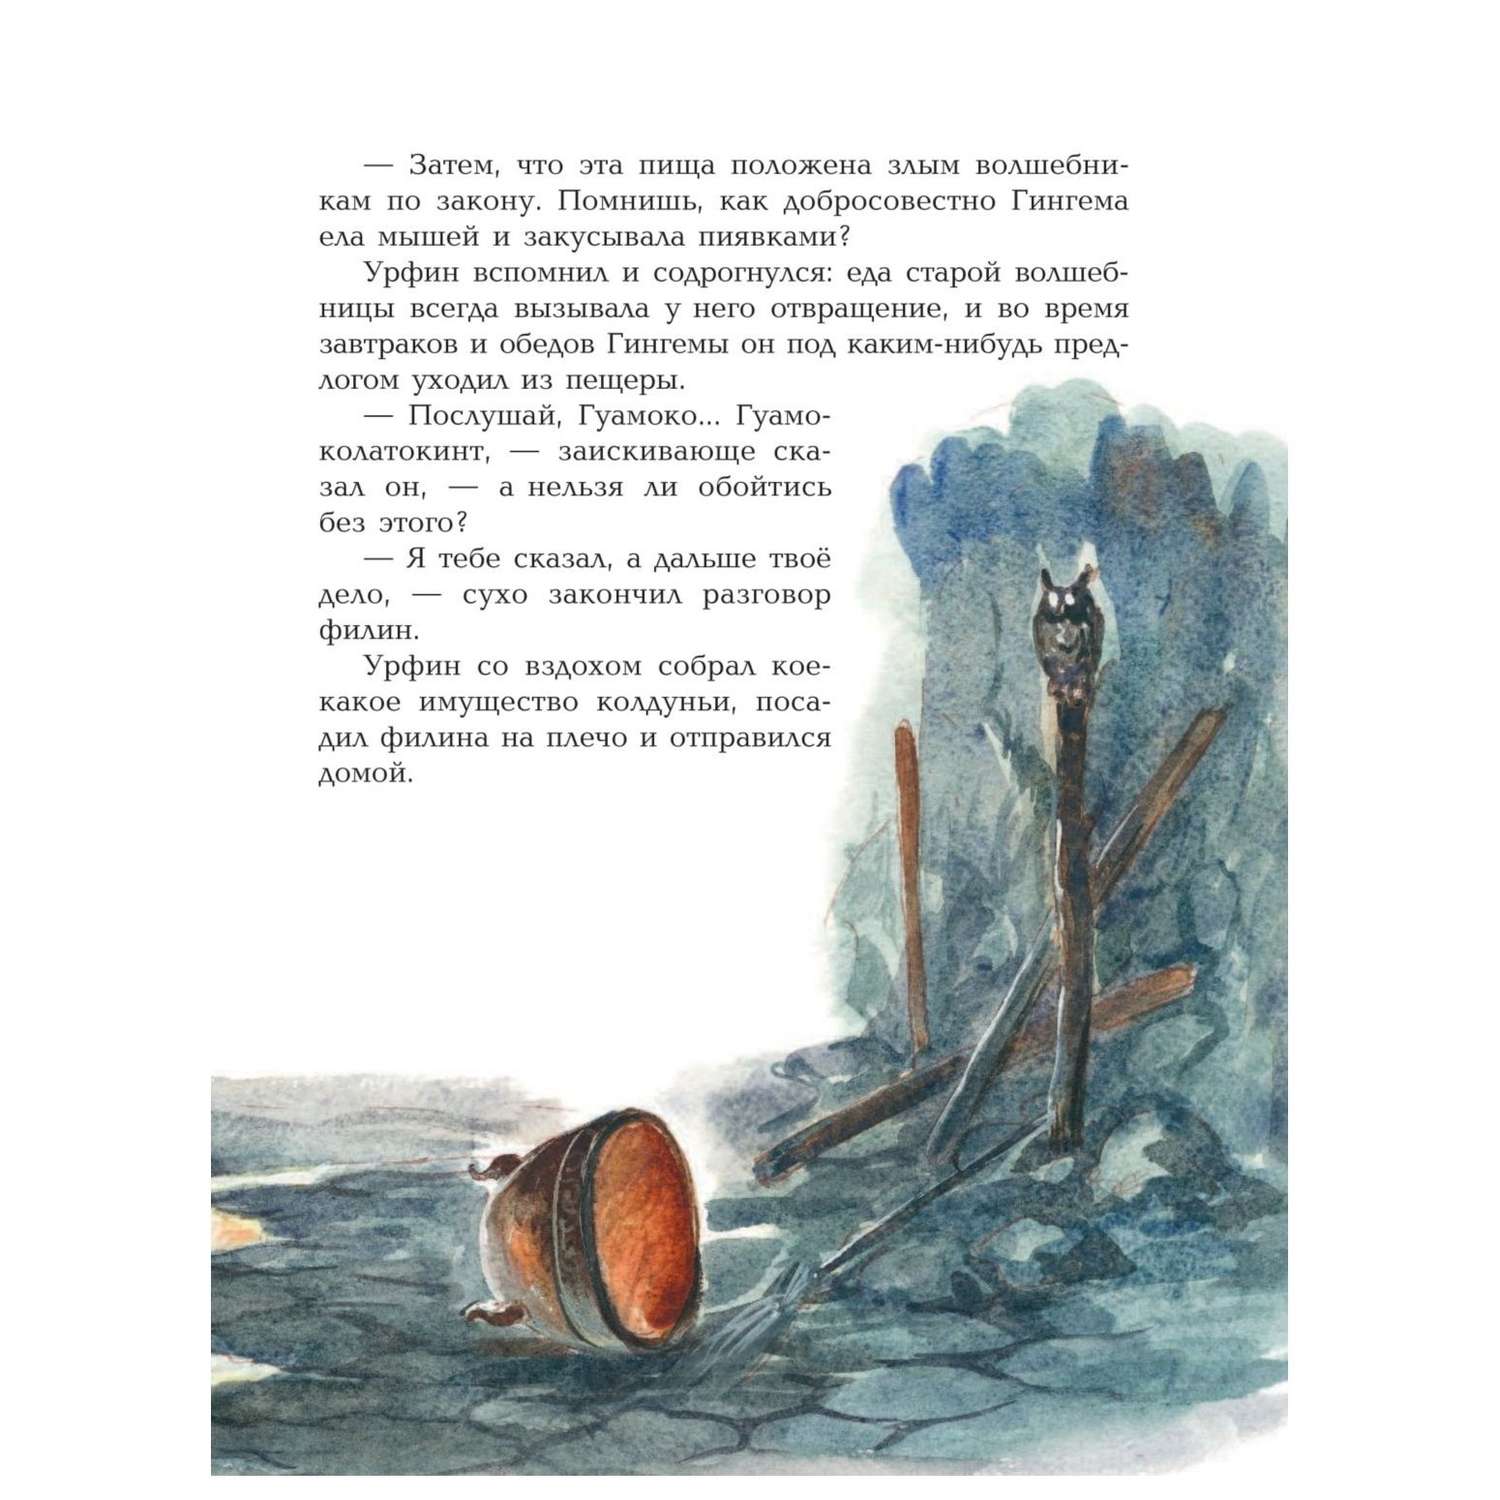 Книга Эксмо Урфин Джюс и его деревянные солдаты иллюстрации Власовой - фото 9